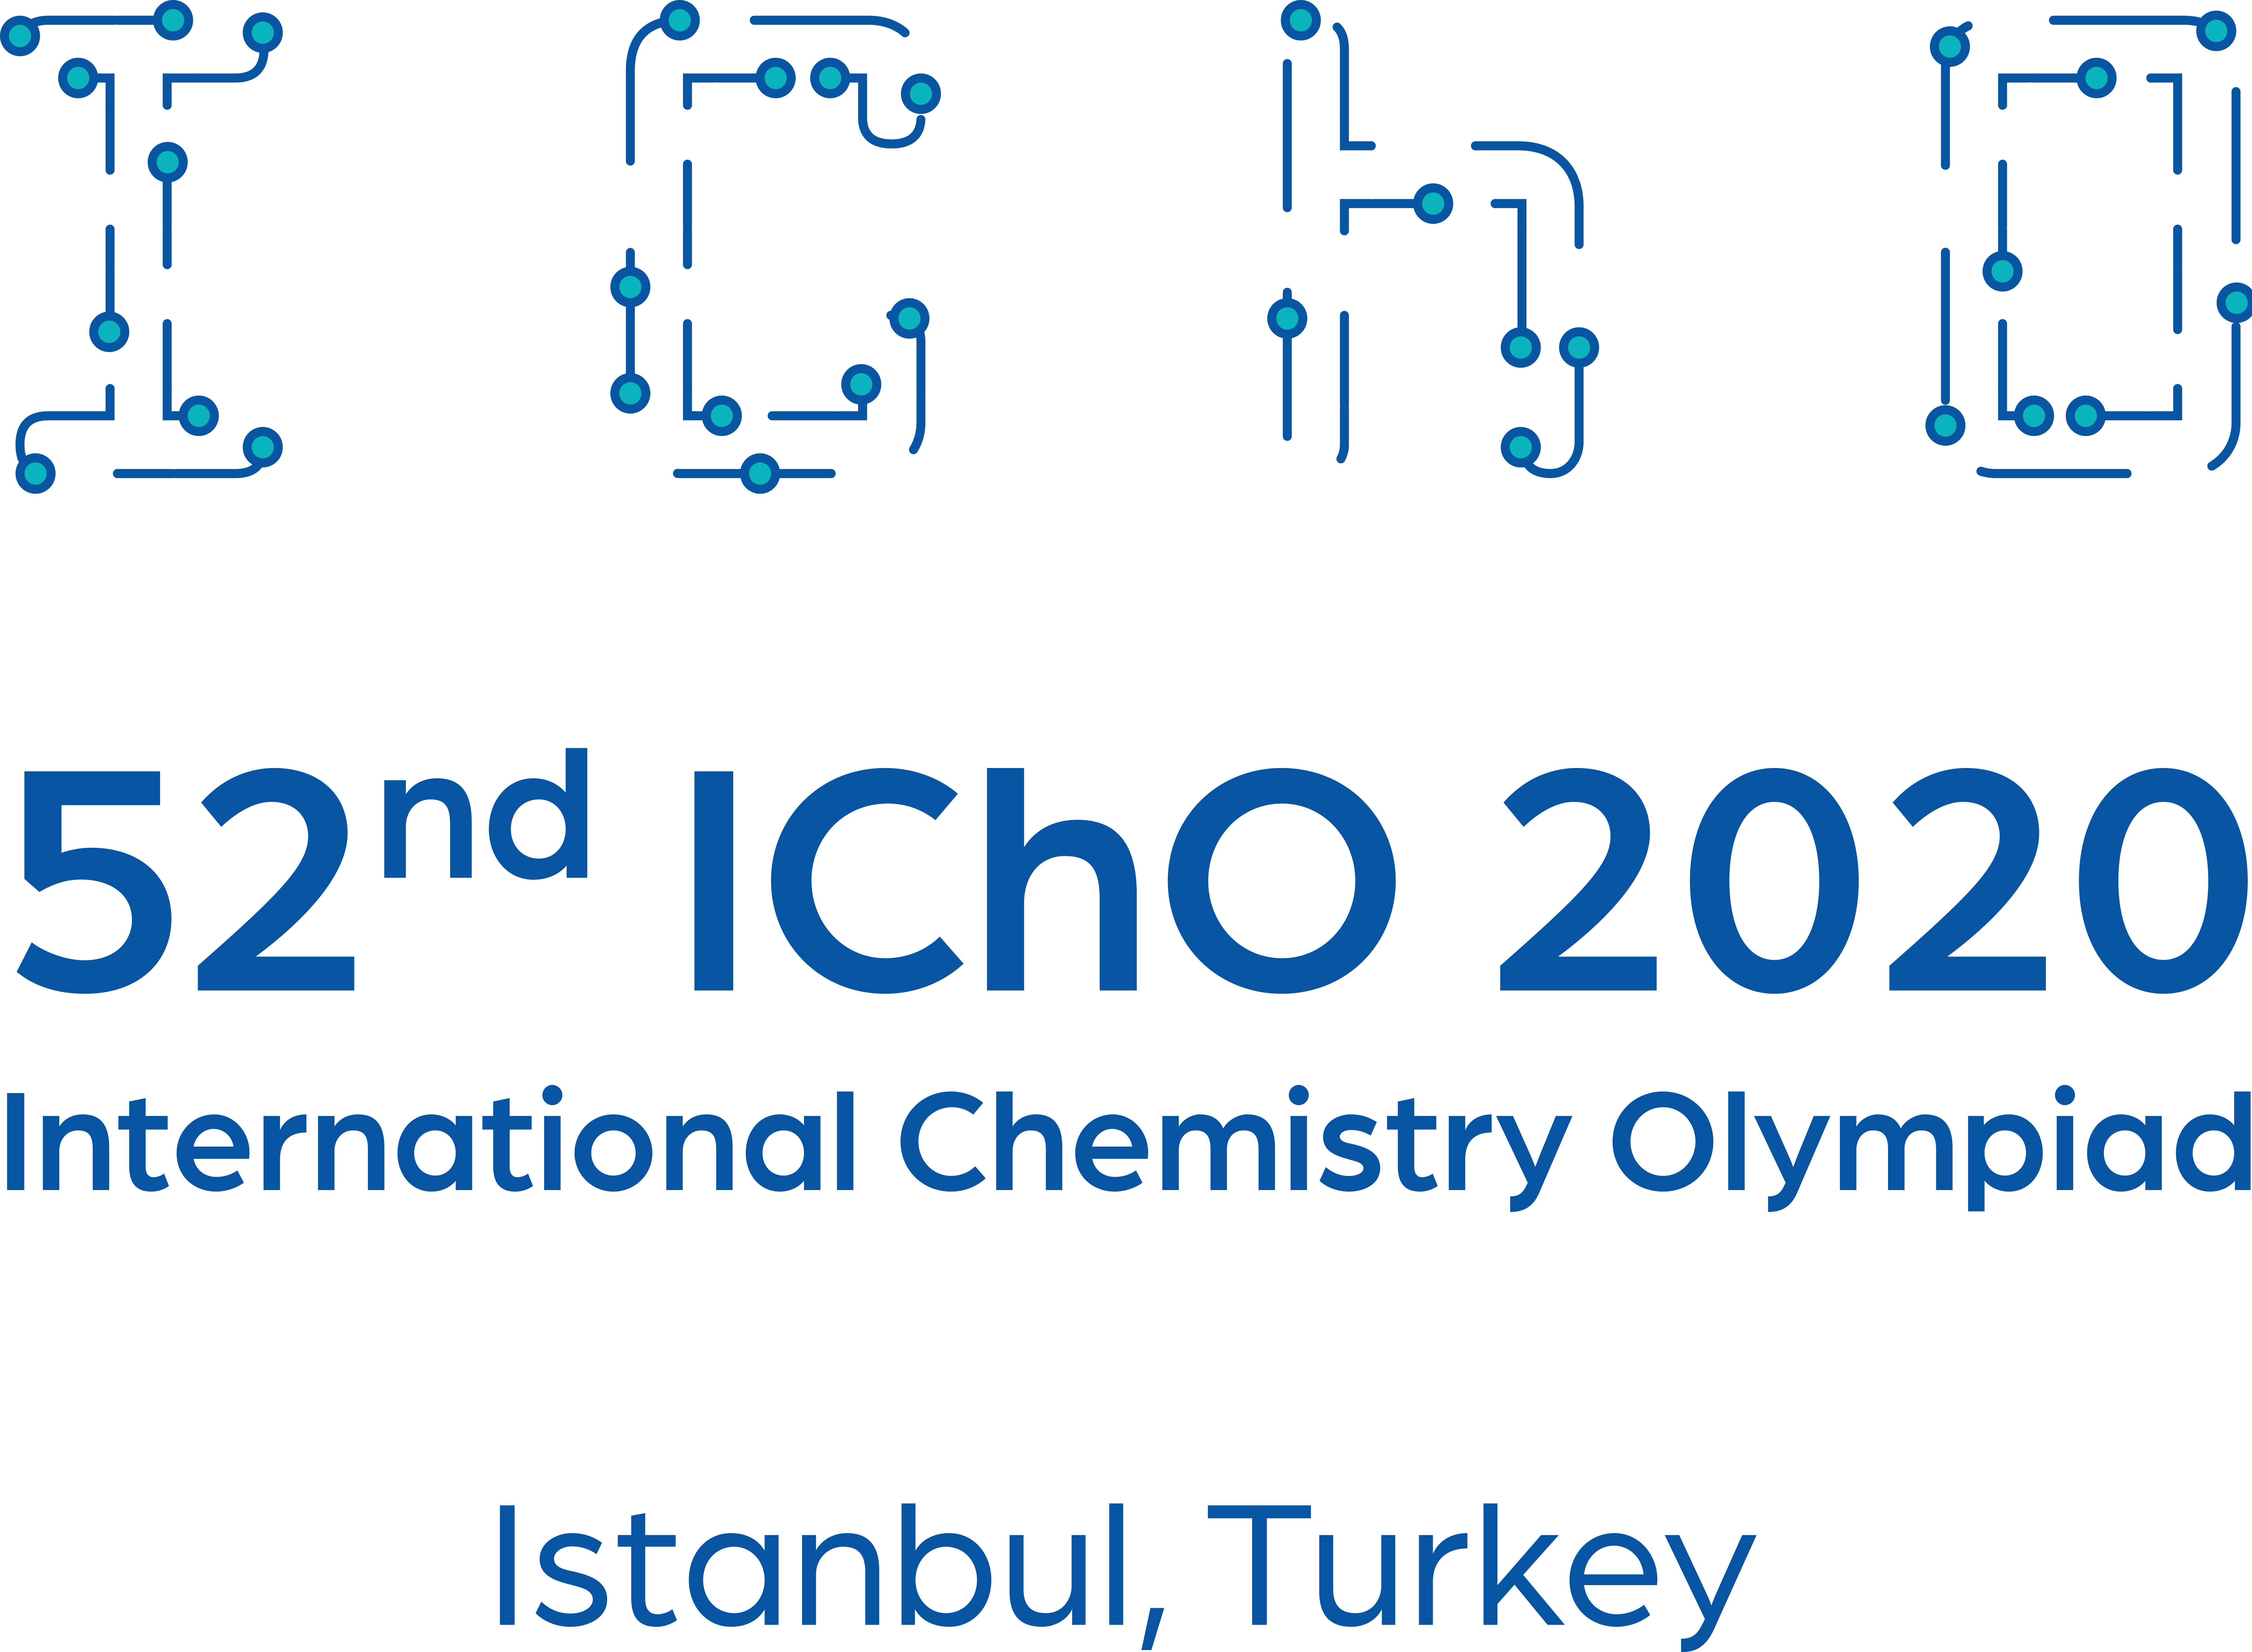 Logo oficial de la 52ª Olimpiada Internacional de Química. Imagen: Cortesía de la IChO 2020.
